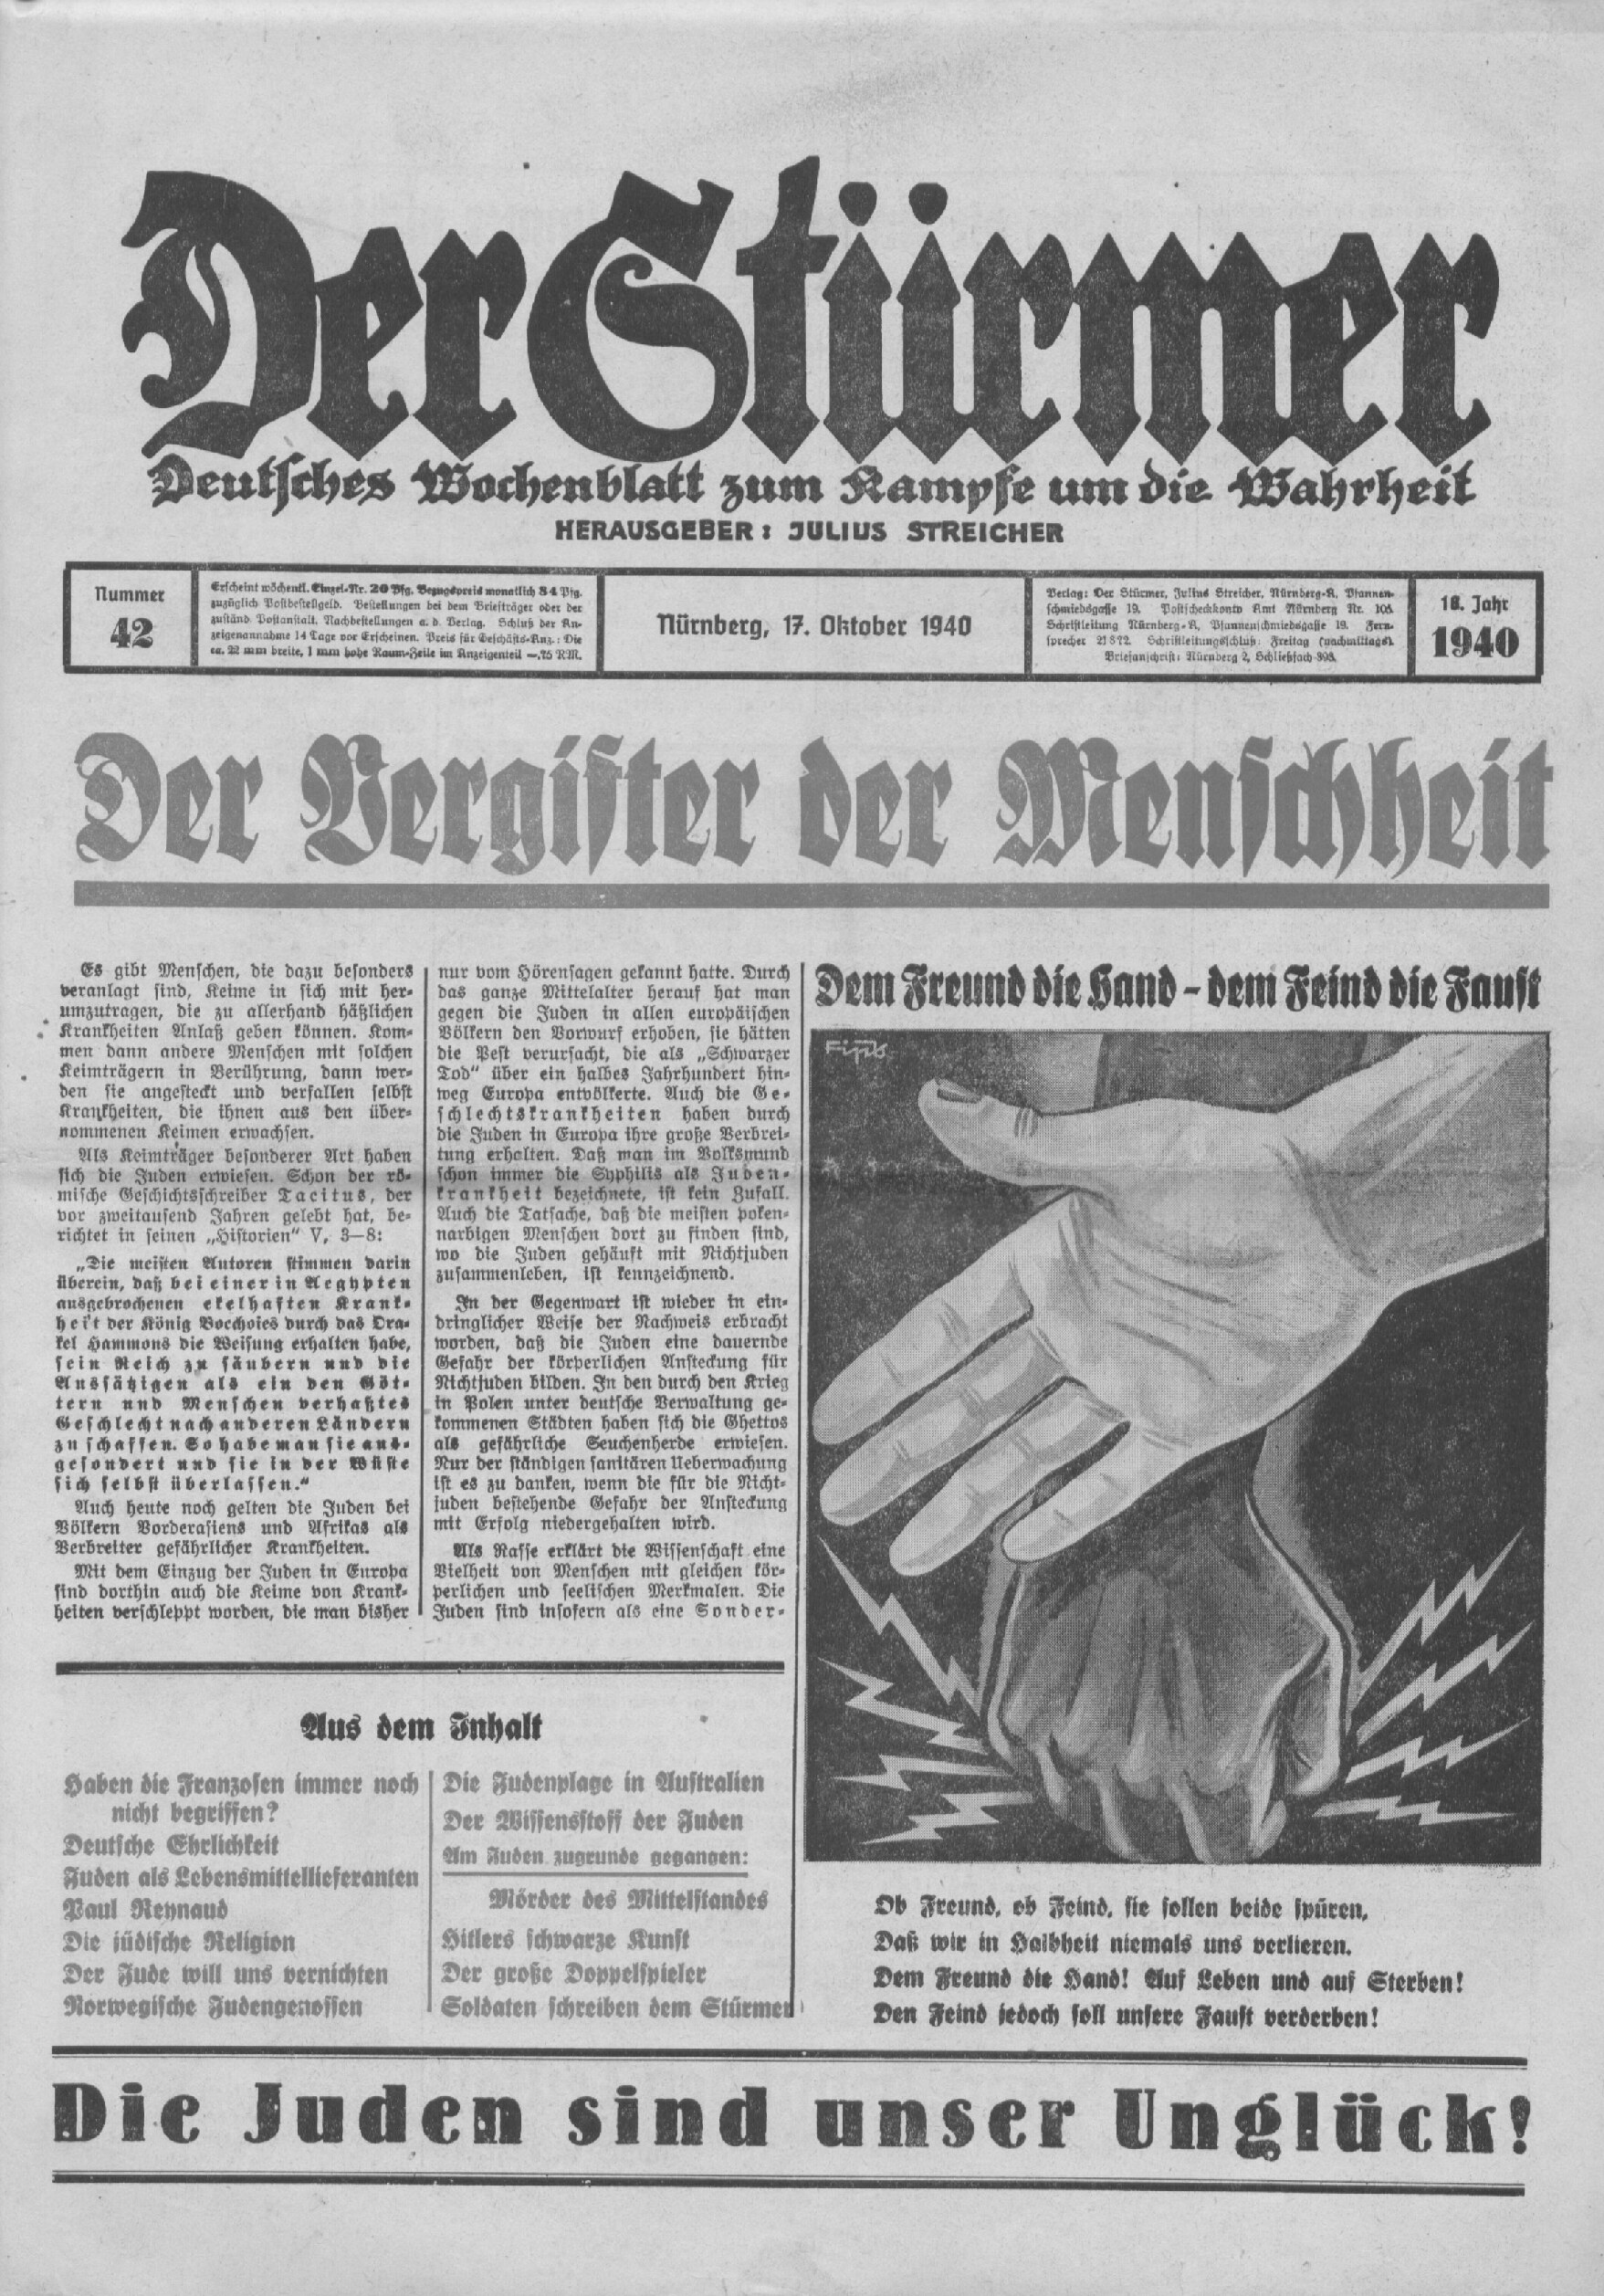 Der Stürmer - 1940 Nr. 42 - Der Vergifter der Menschheit